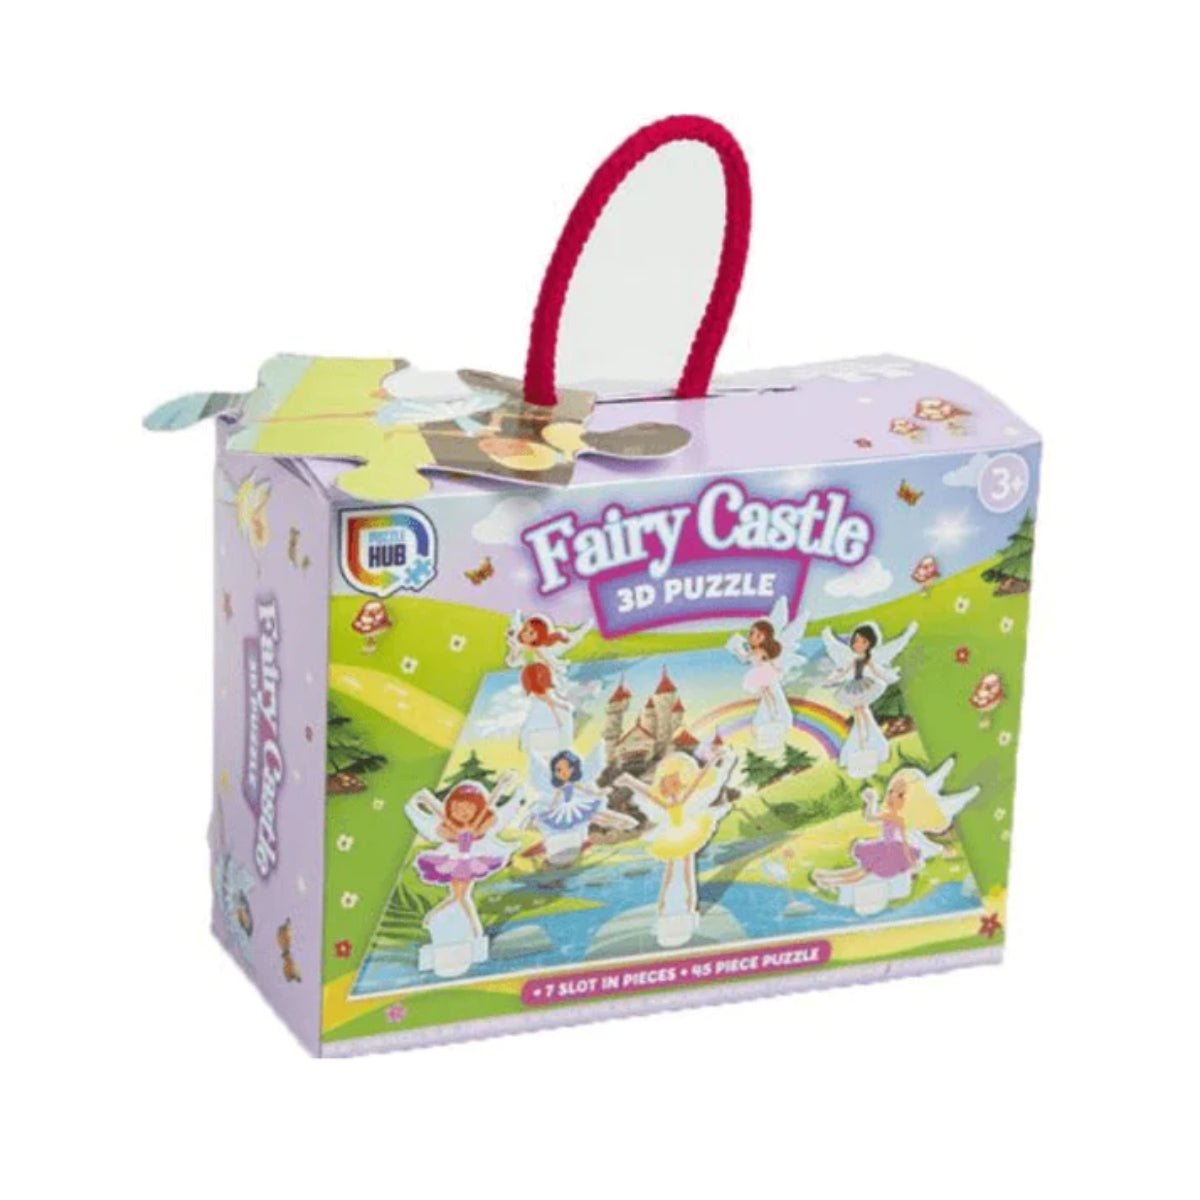 Fairy Castle 45 piece 3D Puzzle - Kids Party Craft